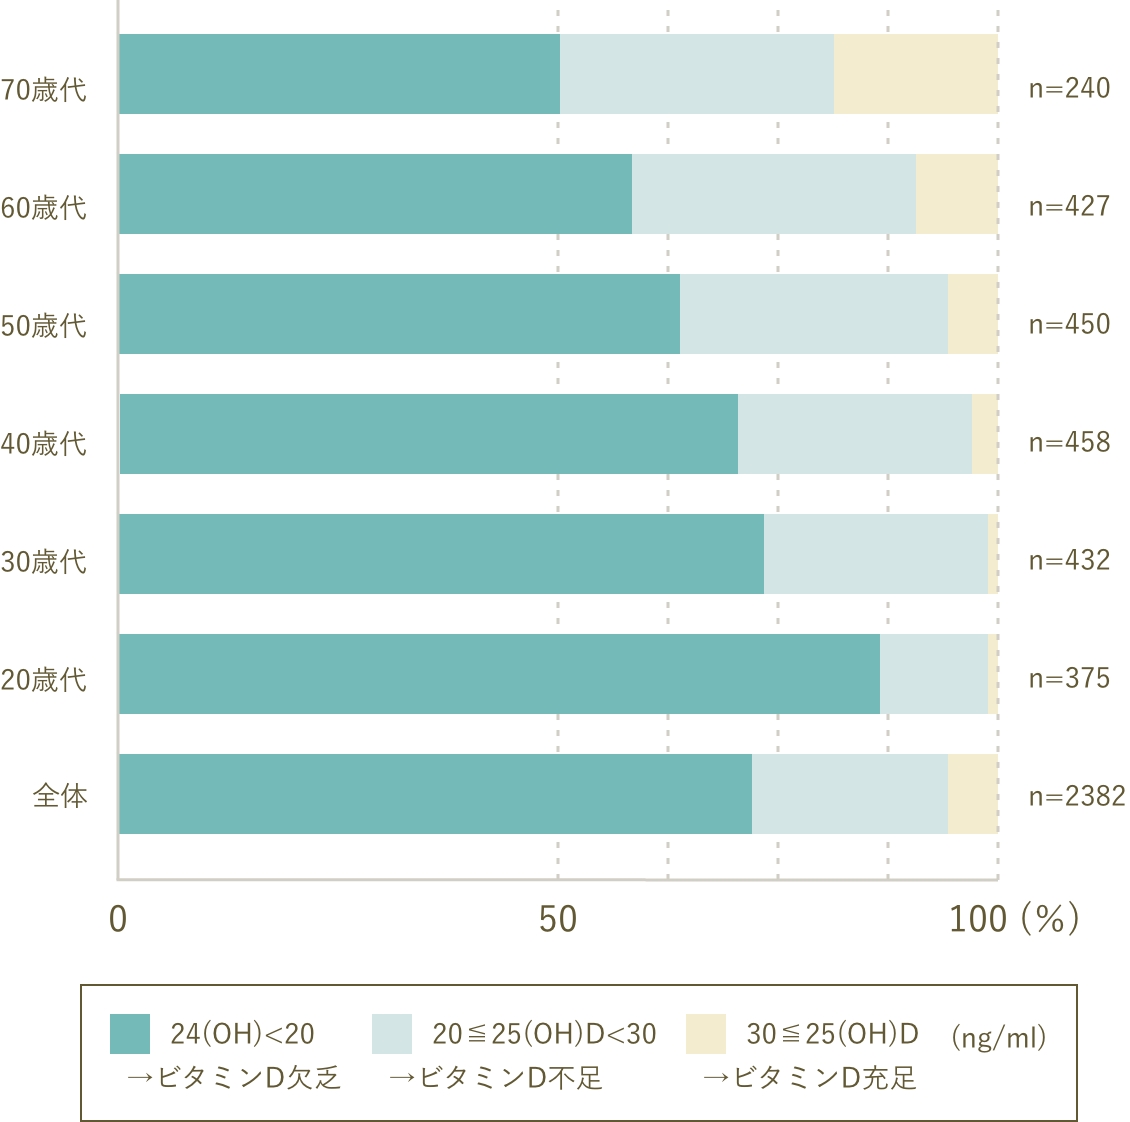 日本人女性の年代別血中ビタミンD濃度分布のグラフ画像